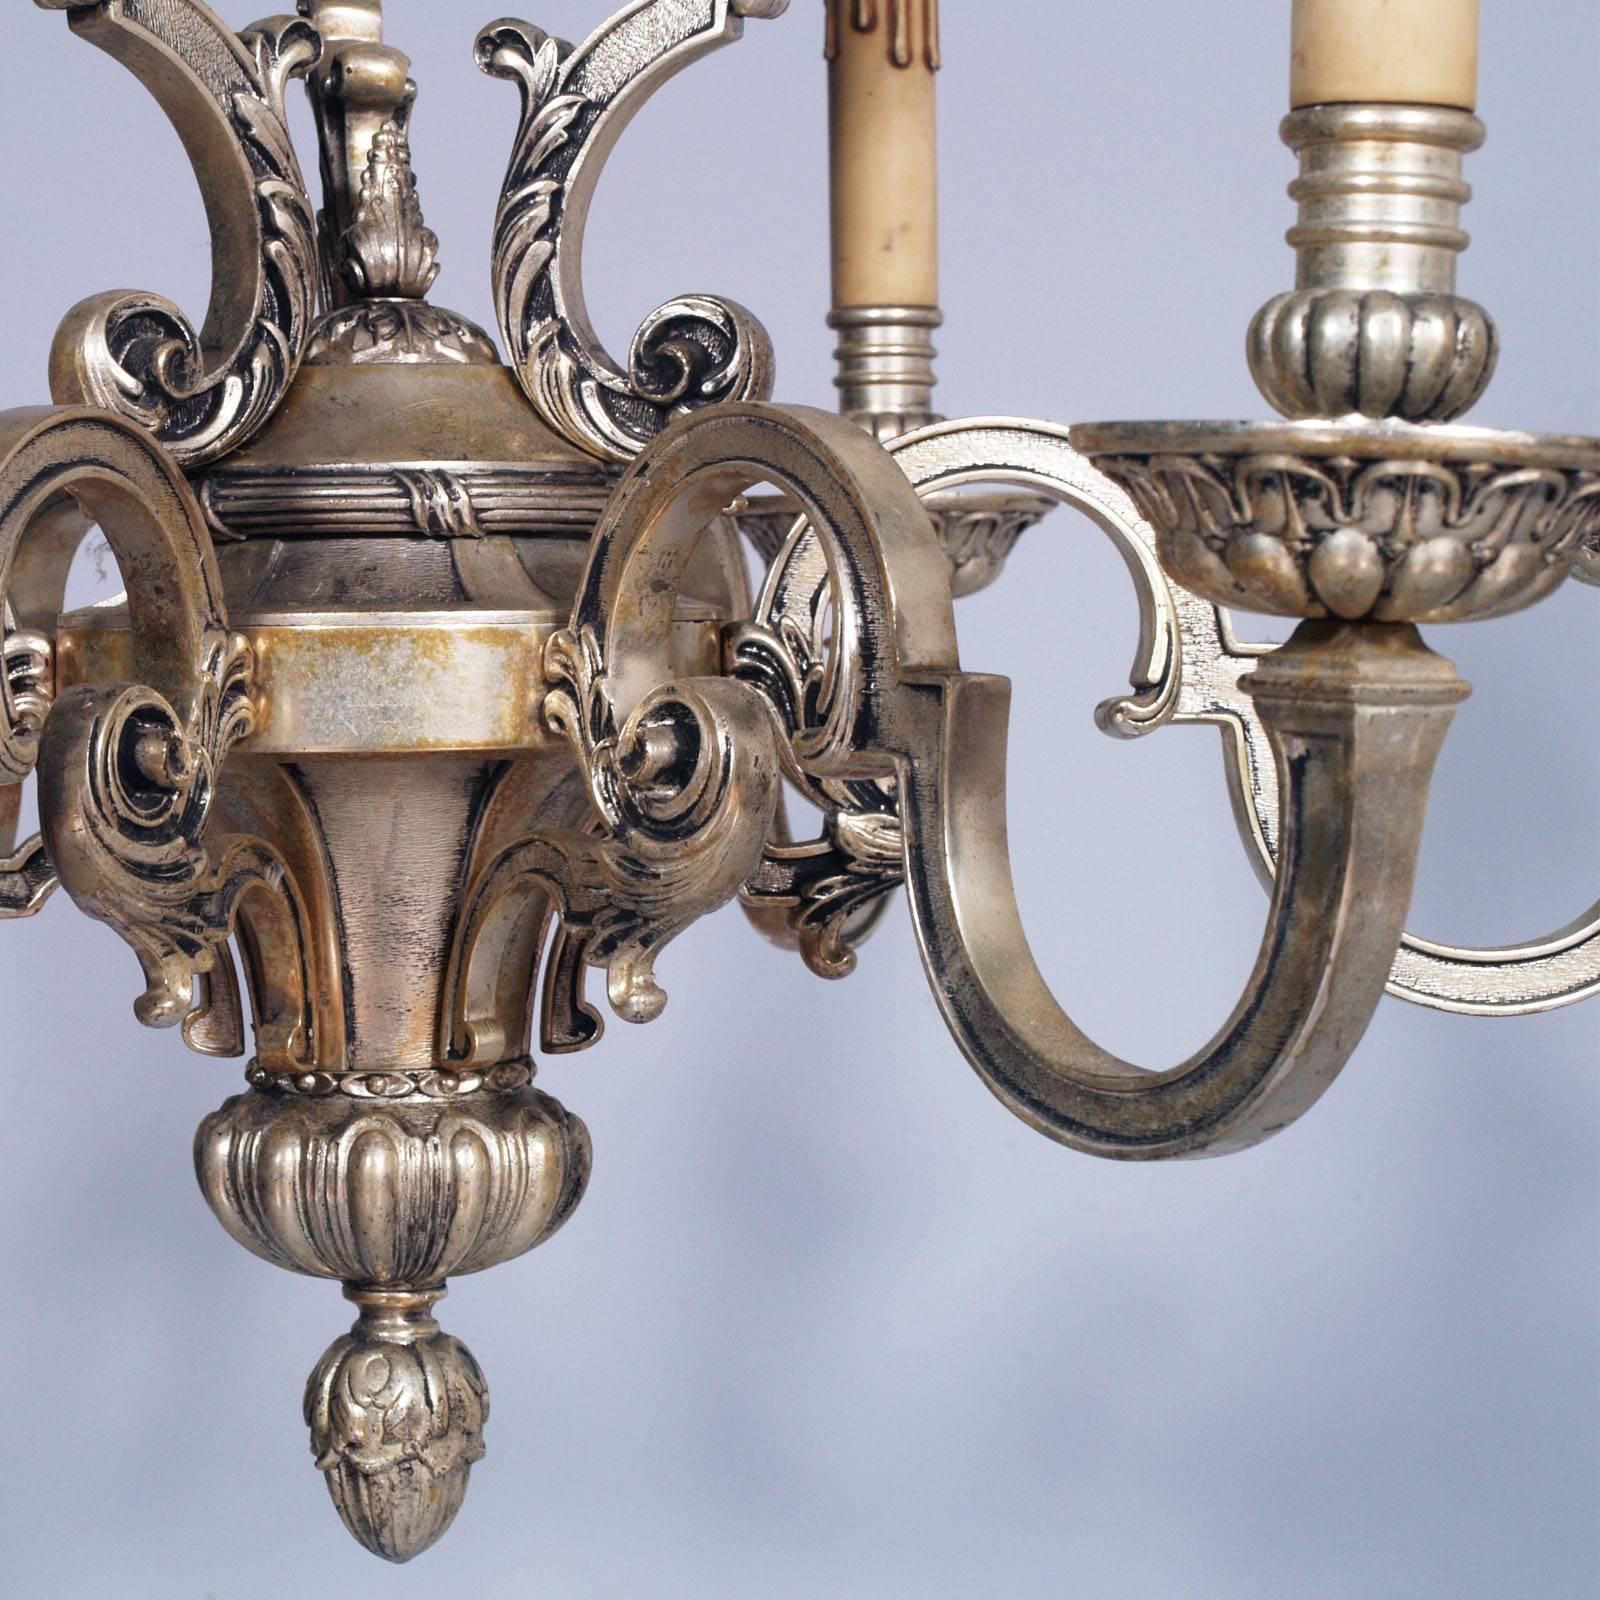 1890 chandeliers